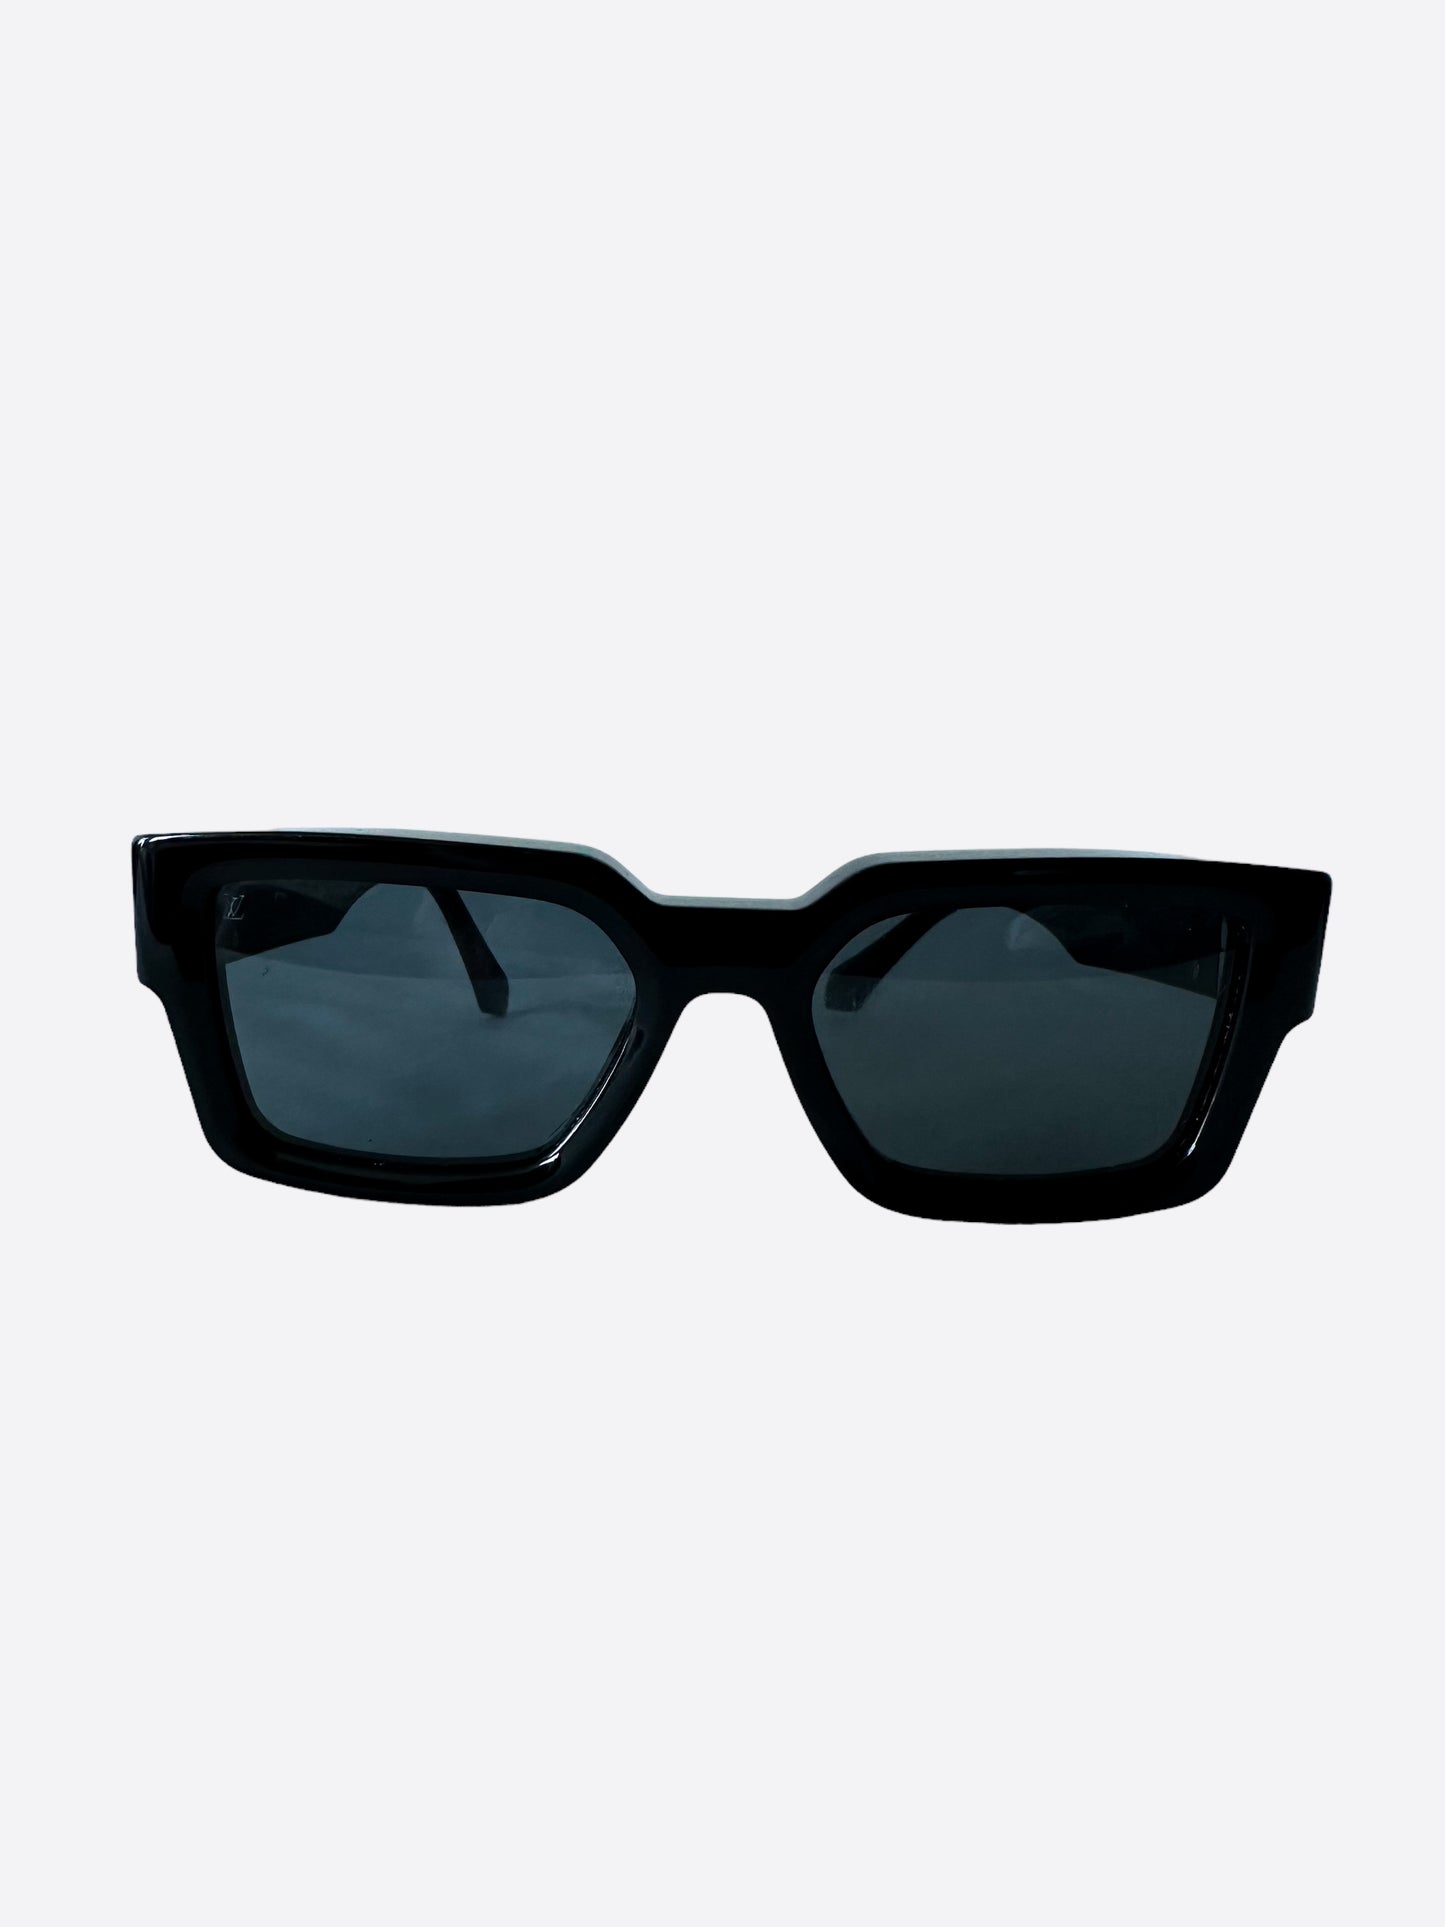 Louis Vuitton LV Match Sunglasses Black Acetate. Size W